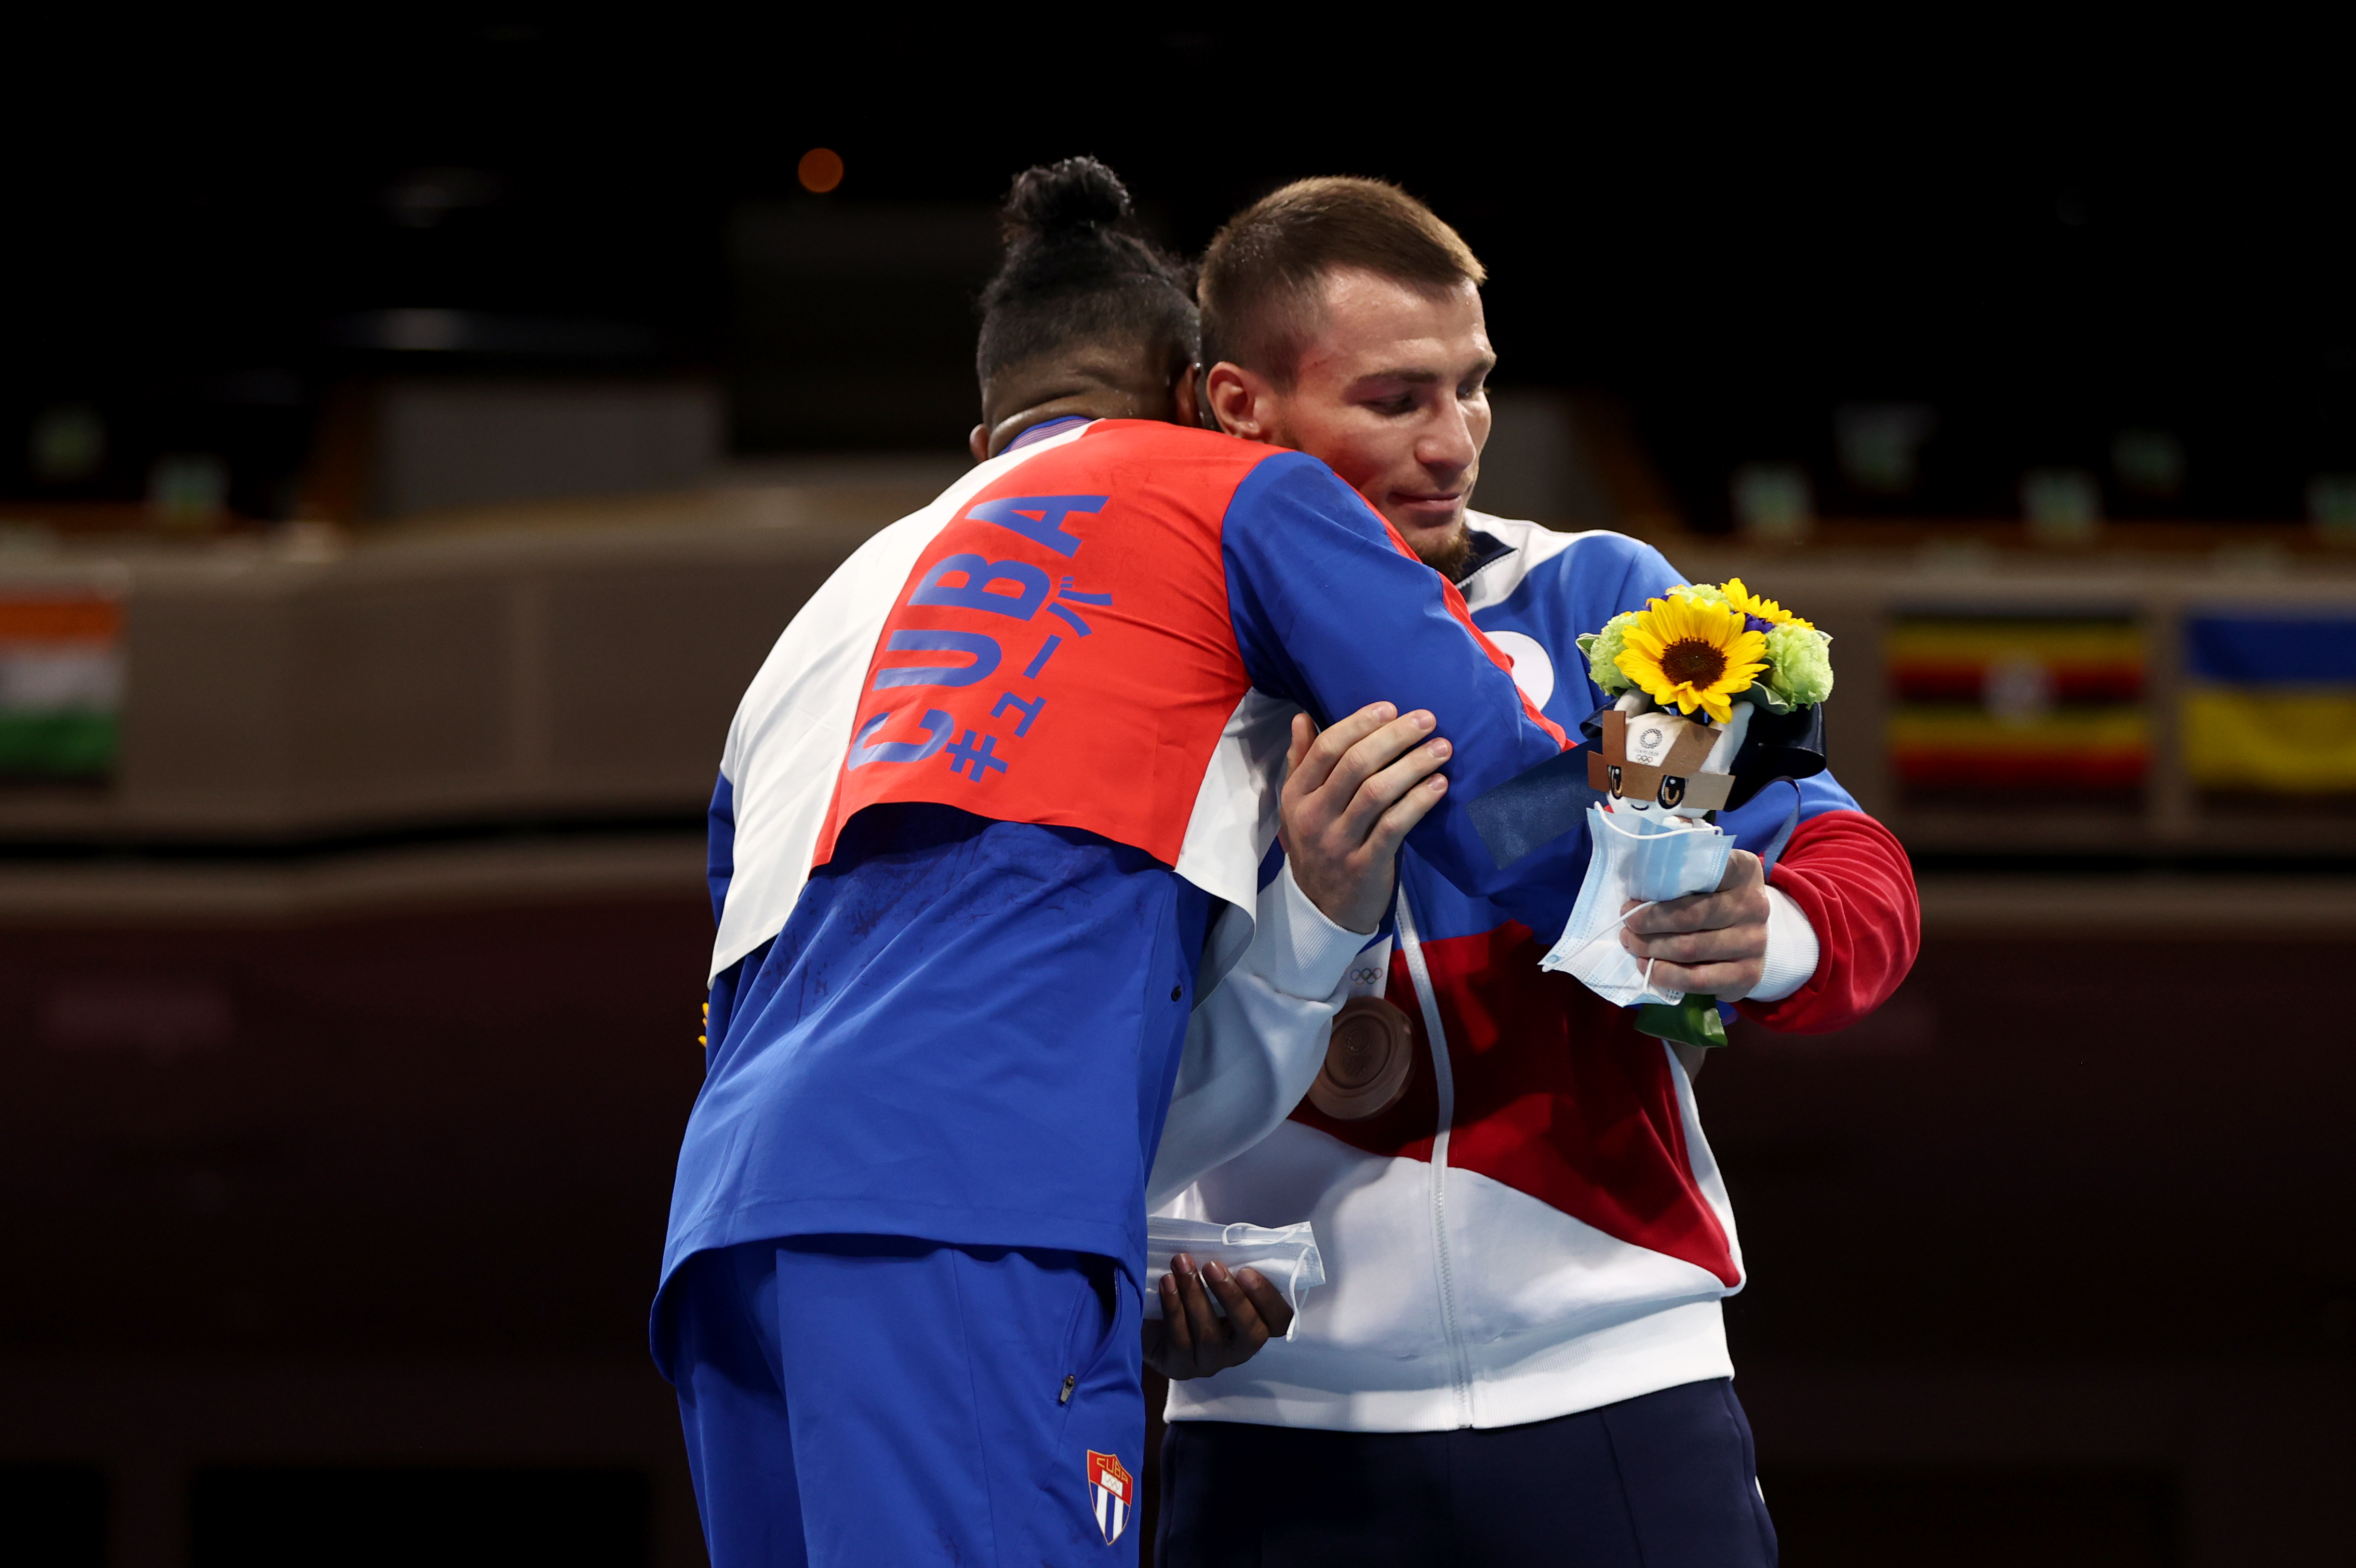  El medallista de oro de la categoría de peso semipesado de boxeo, Arlen López Cardona de Cuba, abraza al ganador de la presea de bronce Imam Khataev, del Comité Olímpico Ruso.